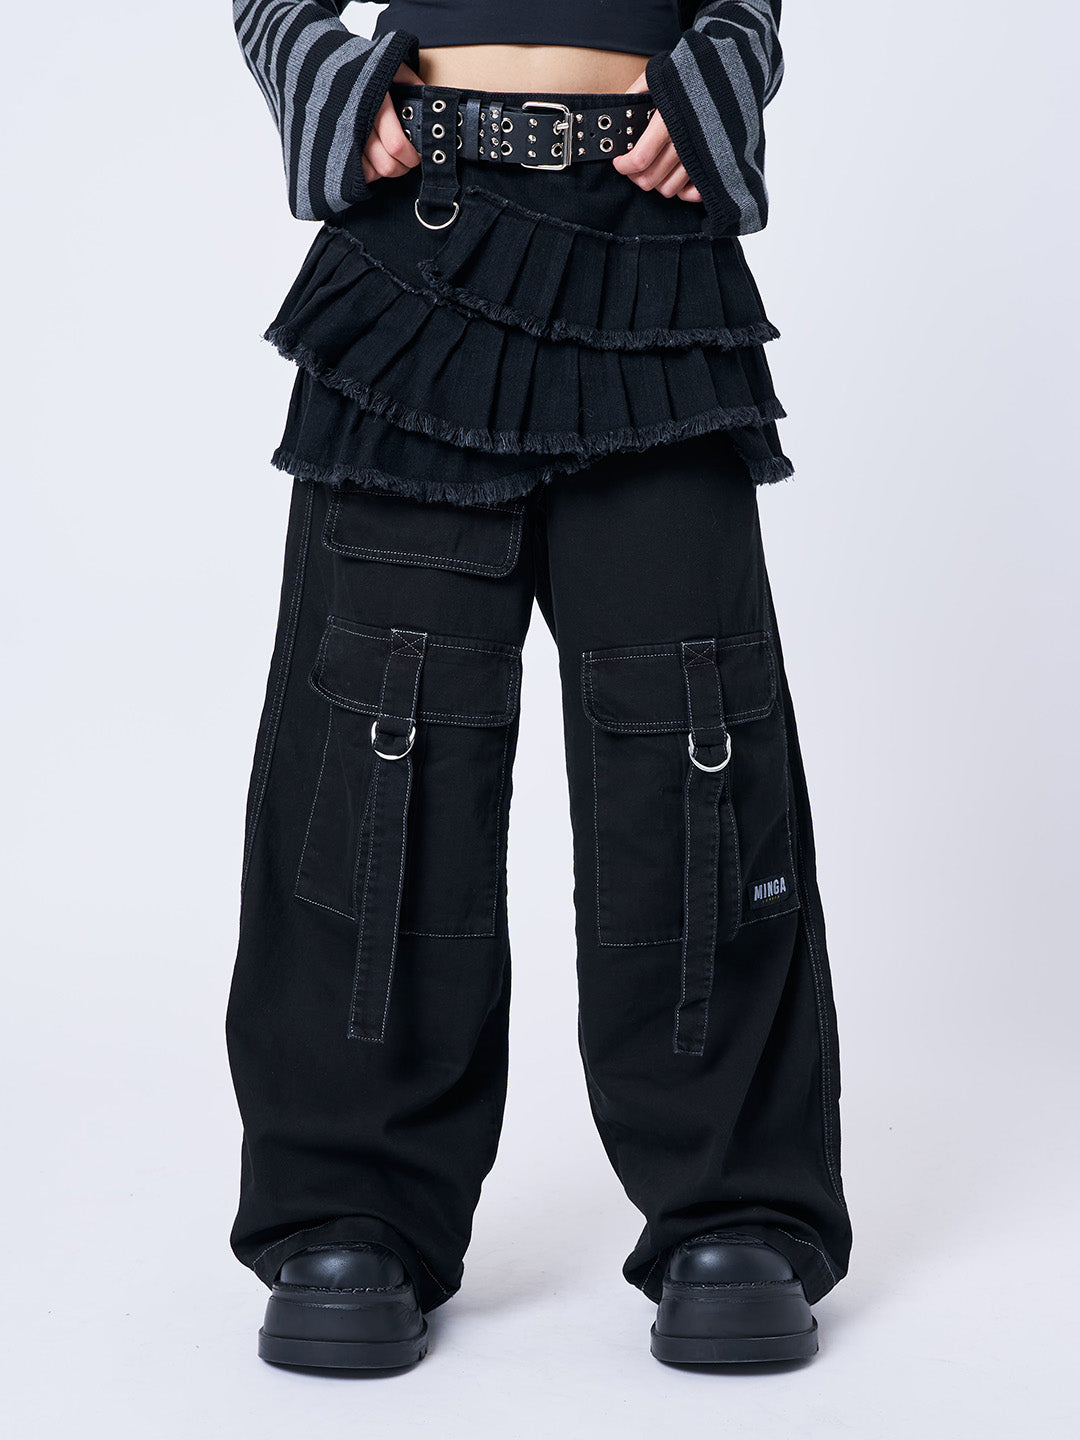 Azelia Black Pleated Mini Skirt